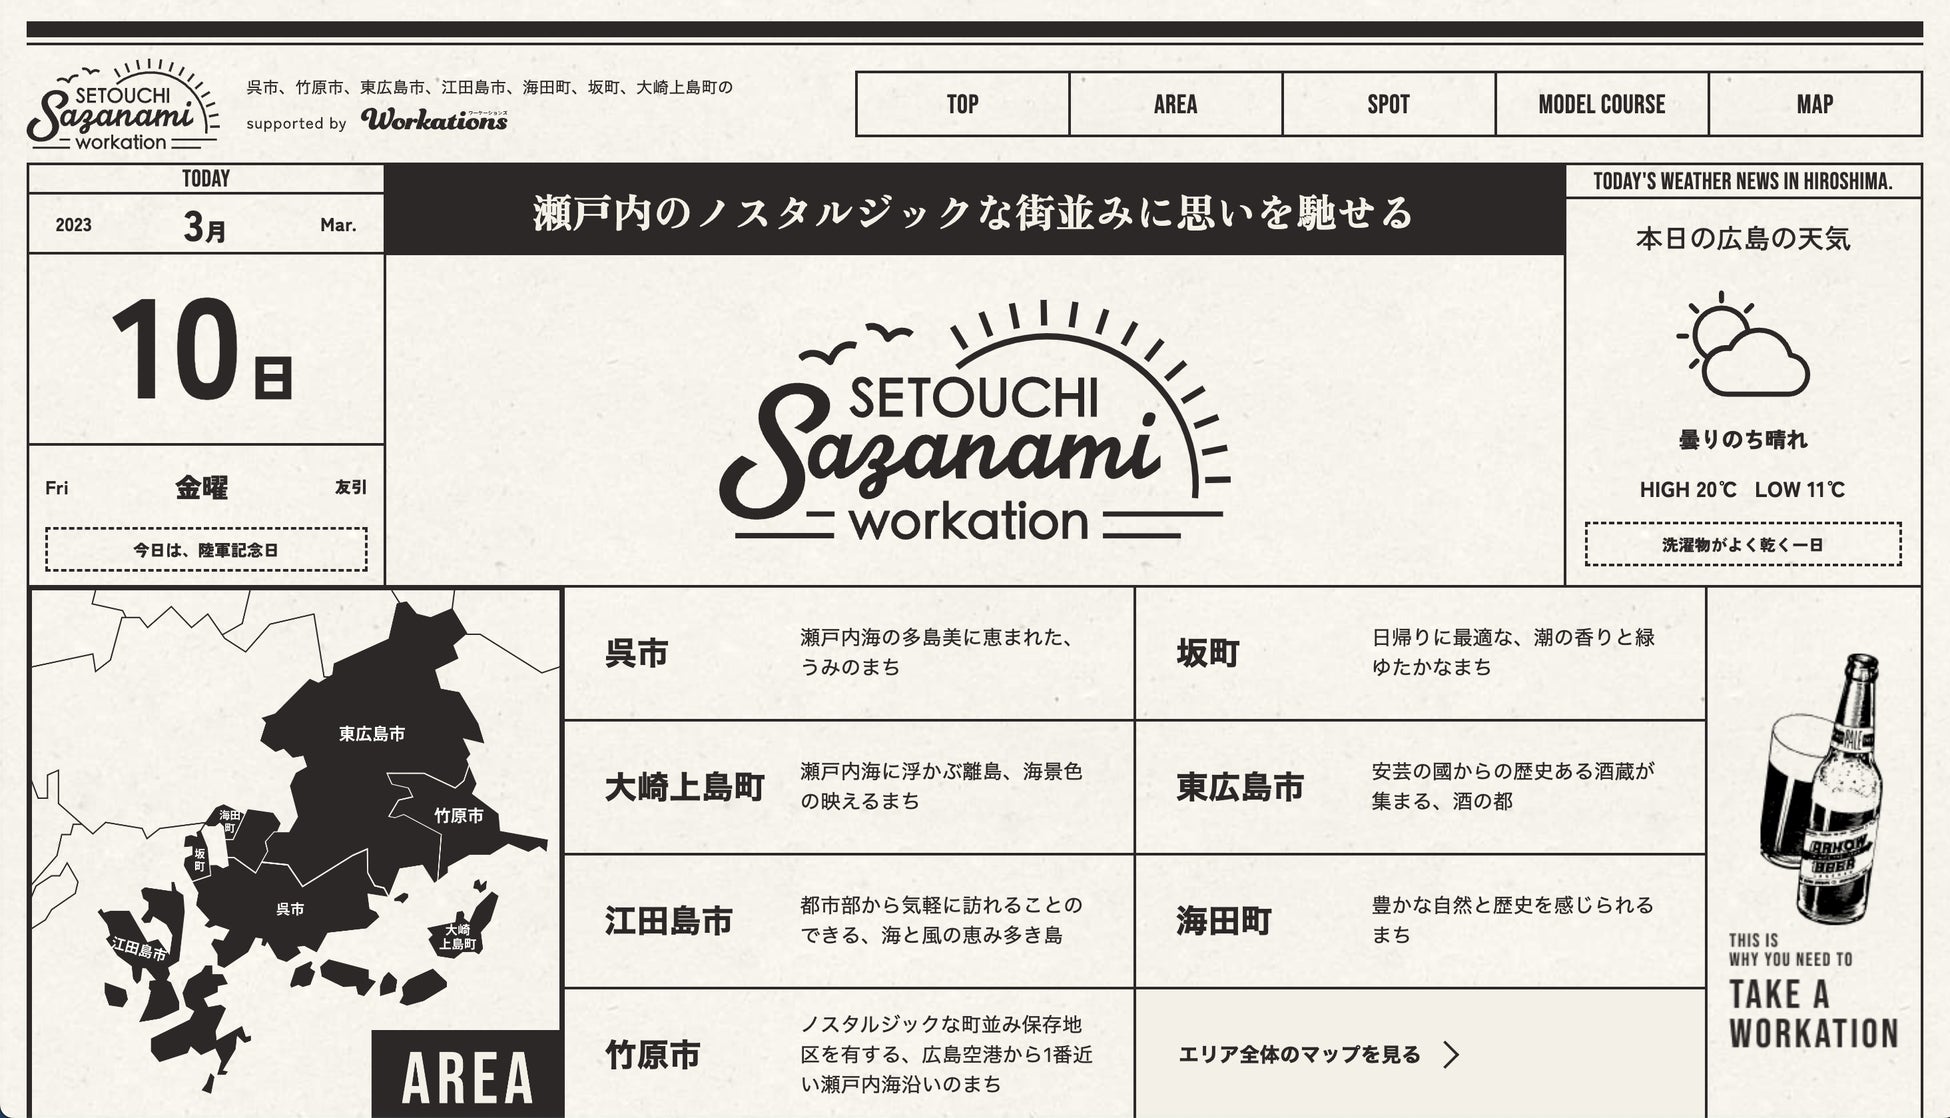 広島中央地域連携中枢都市圏のワーケーションポータルサイト「瀬戸内さざなみワーケーション」ページを公開しました。